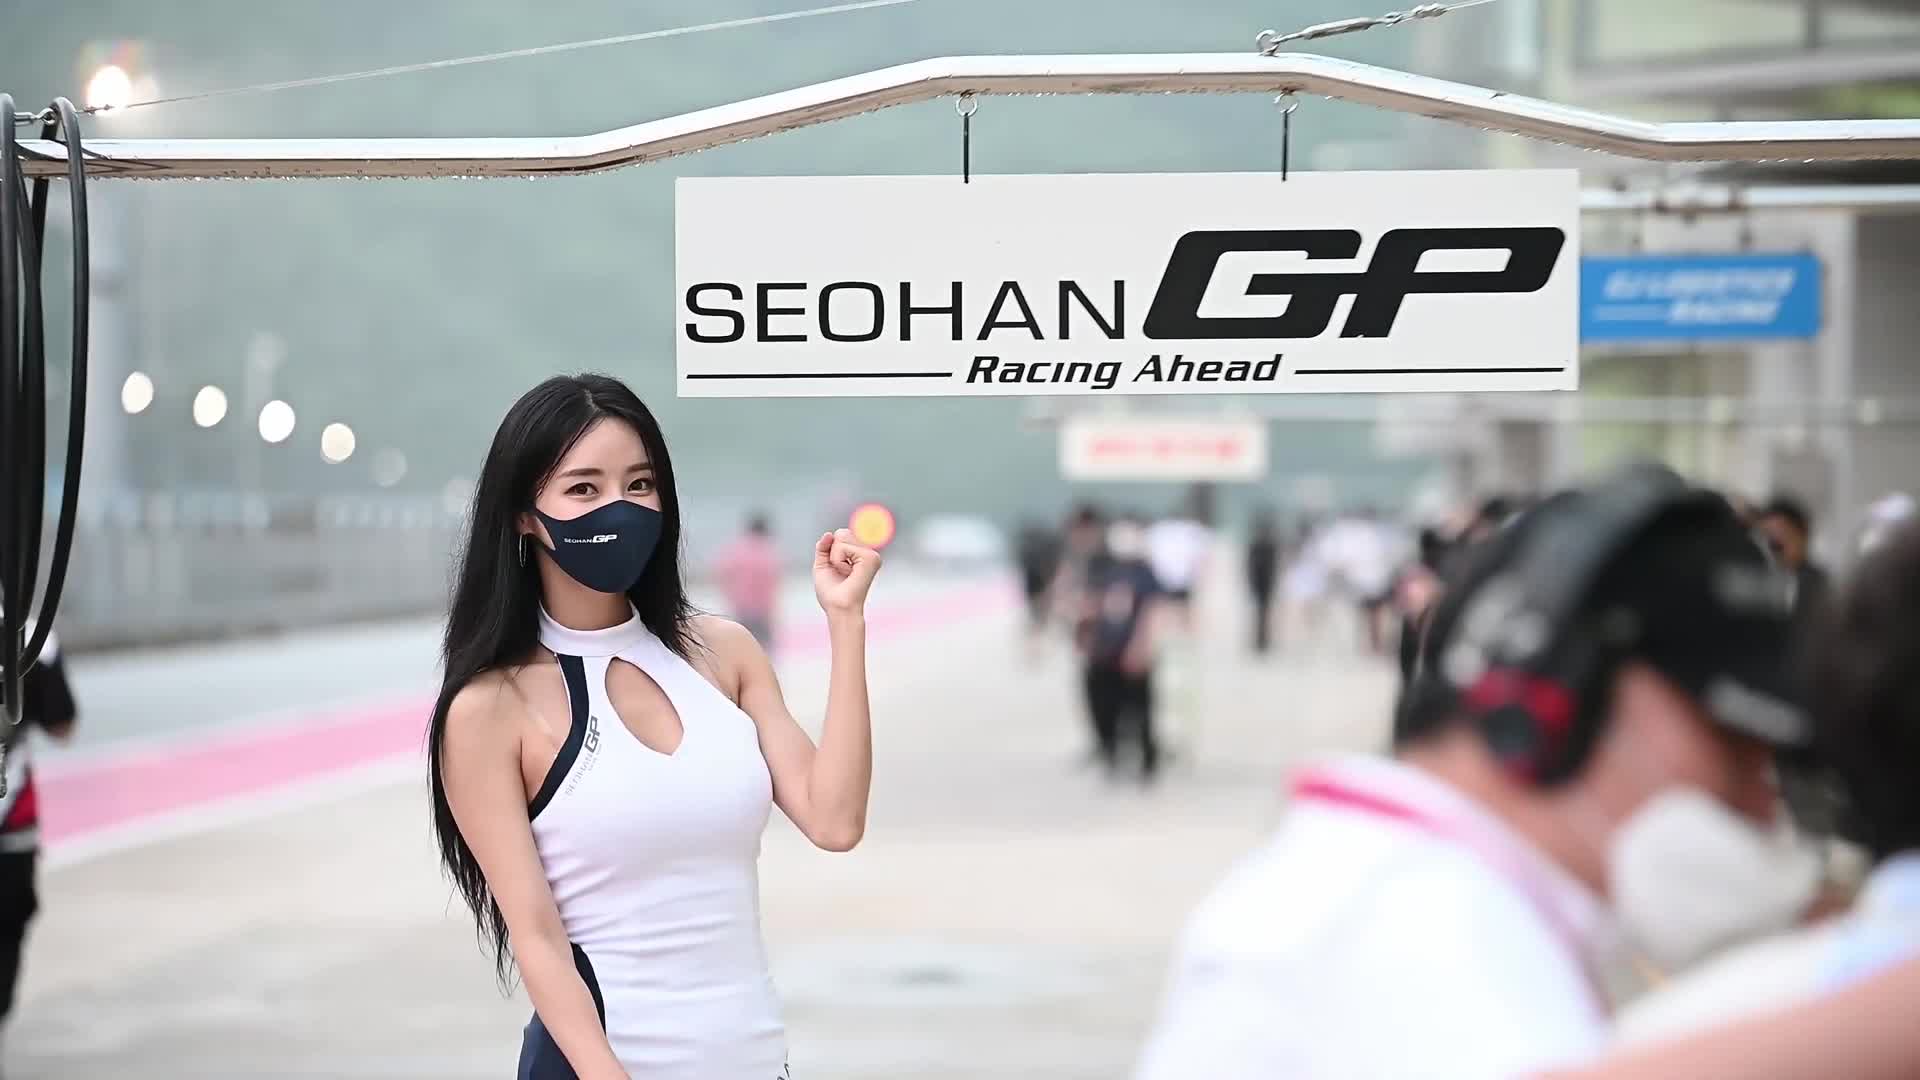 4K 210710 슈퍼레이스 2전 서한GP 레이싱모델 임솔아RACE QUEEN 韓国 レースクイーン gridgirl fulldsds 윈드티비